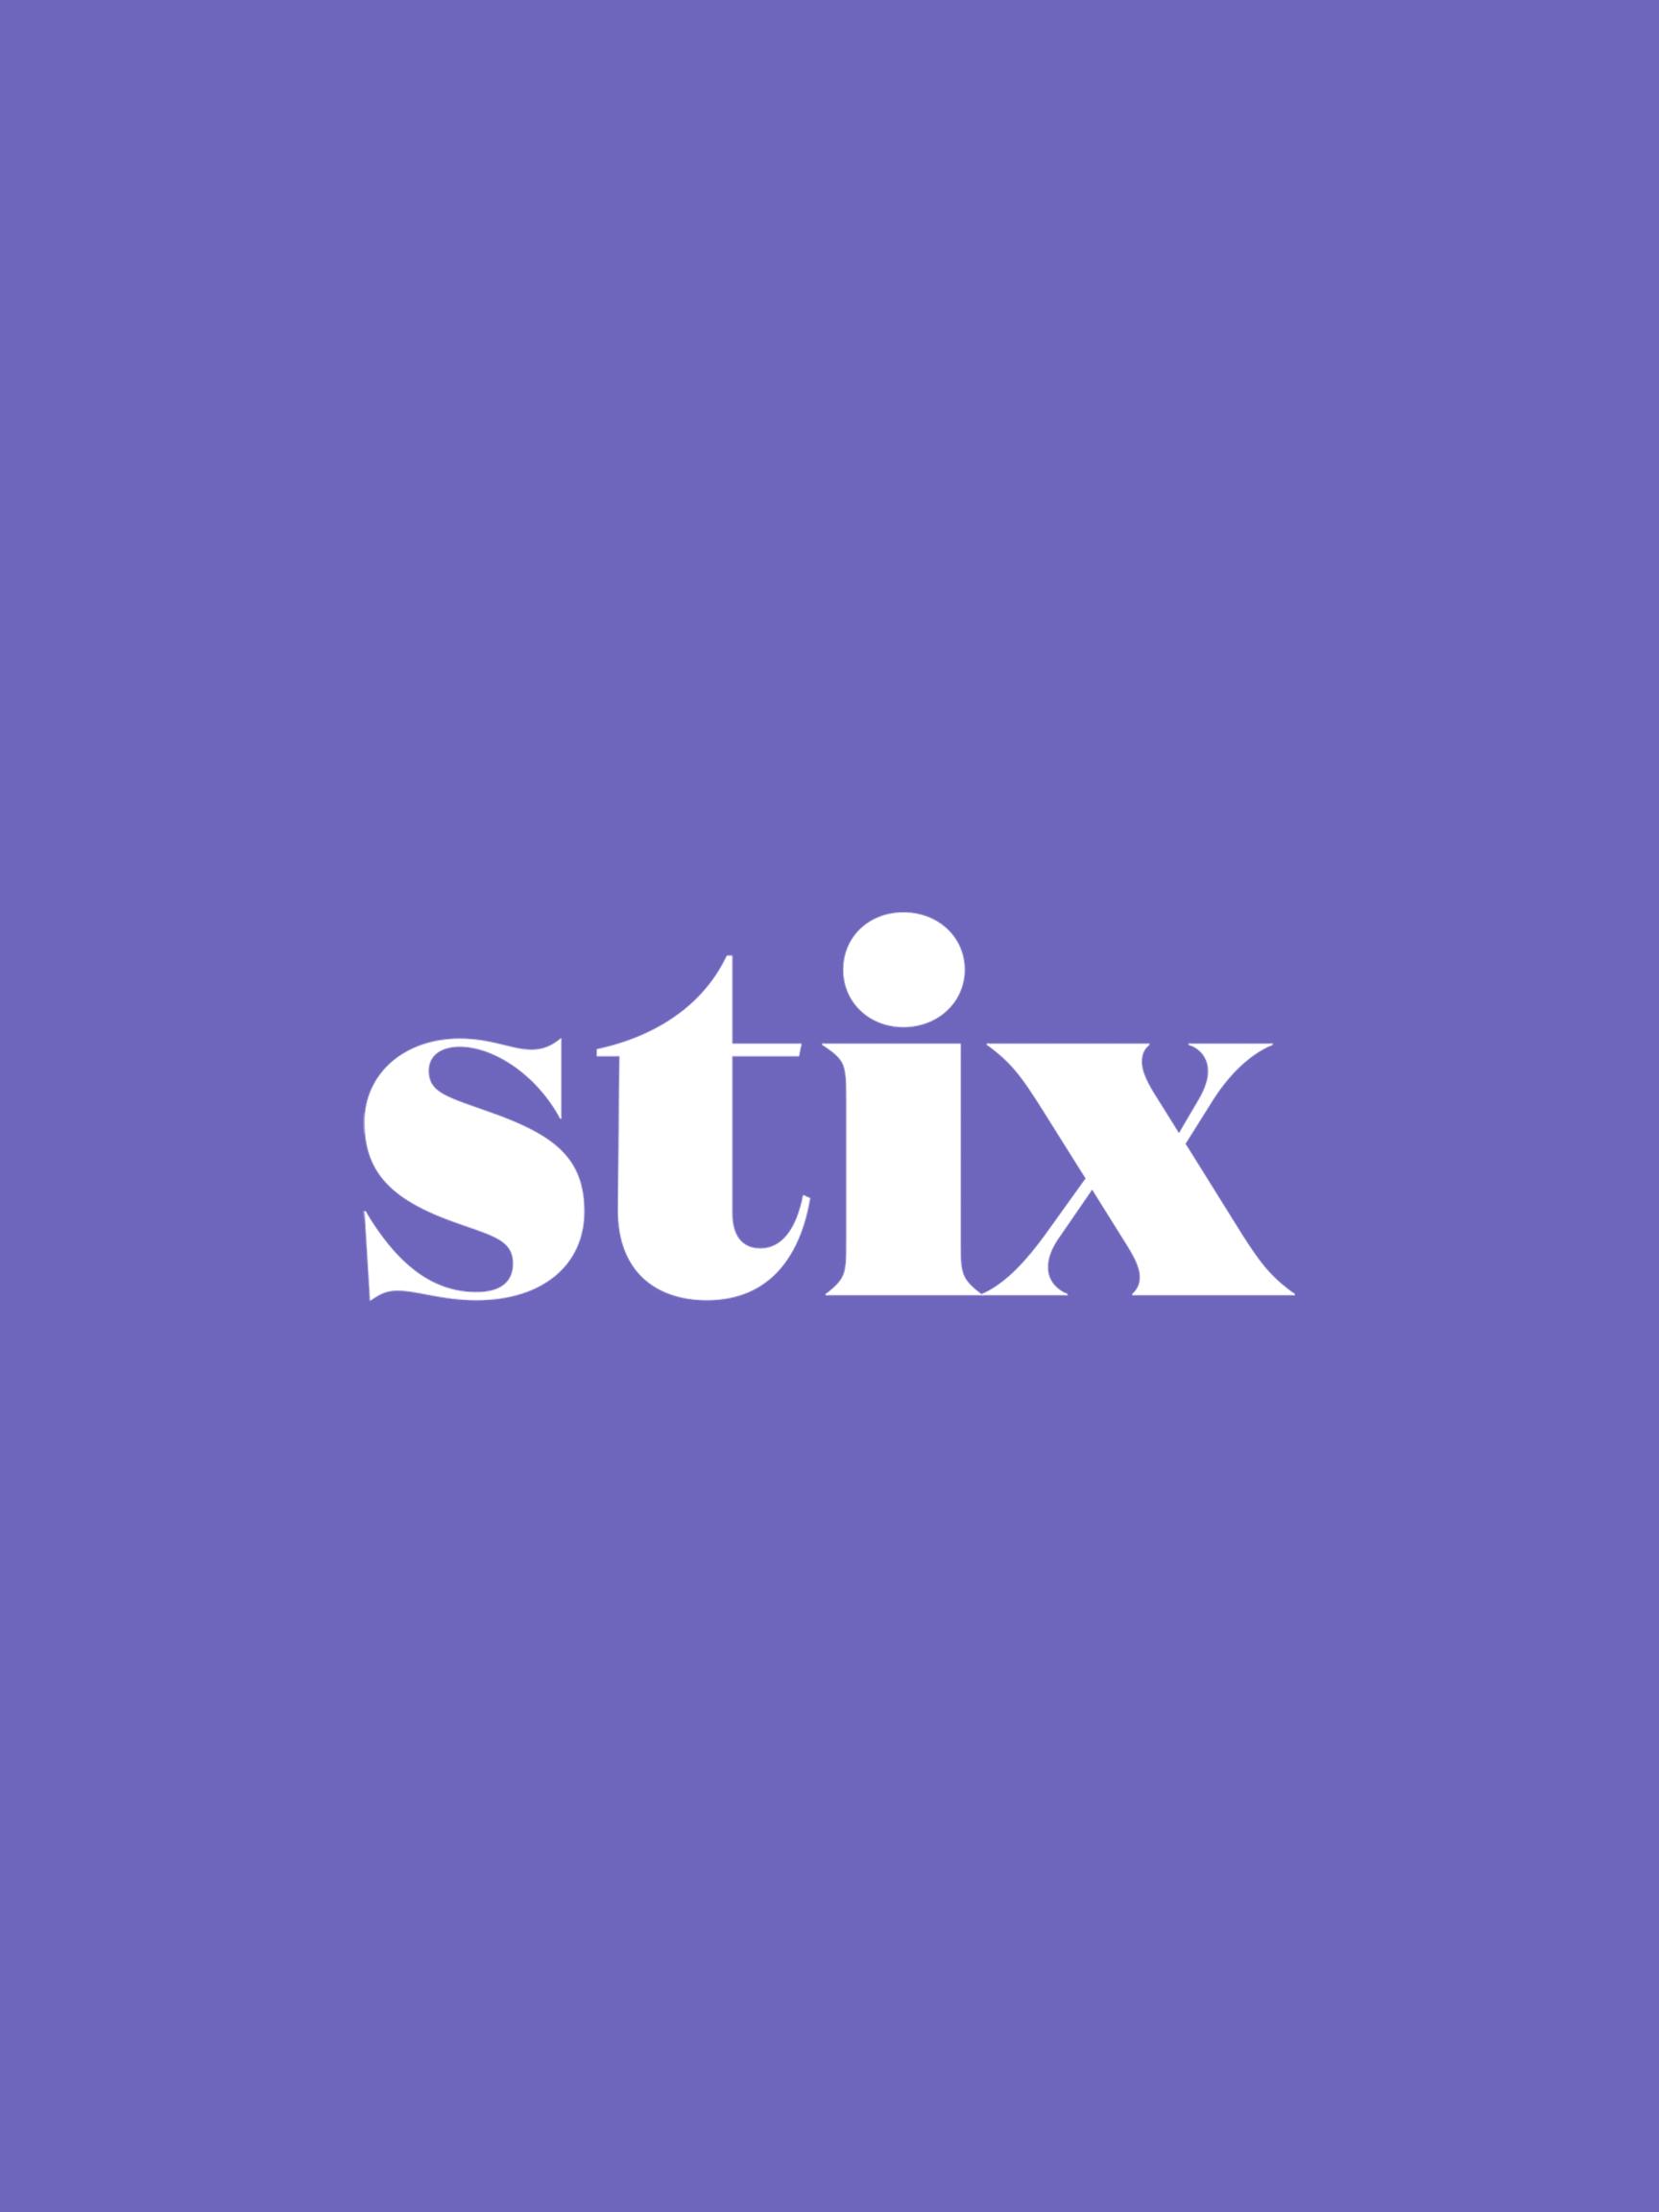 stix logo 2x